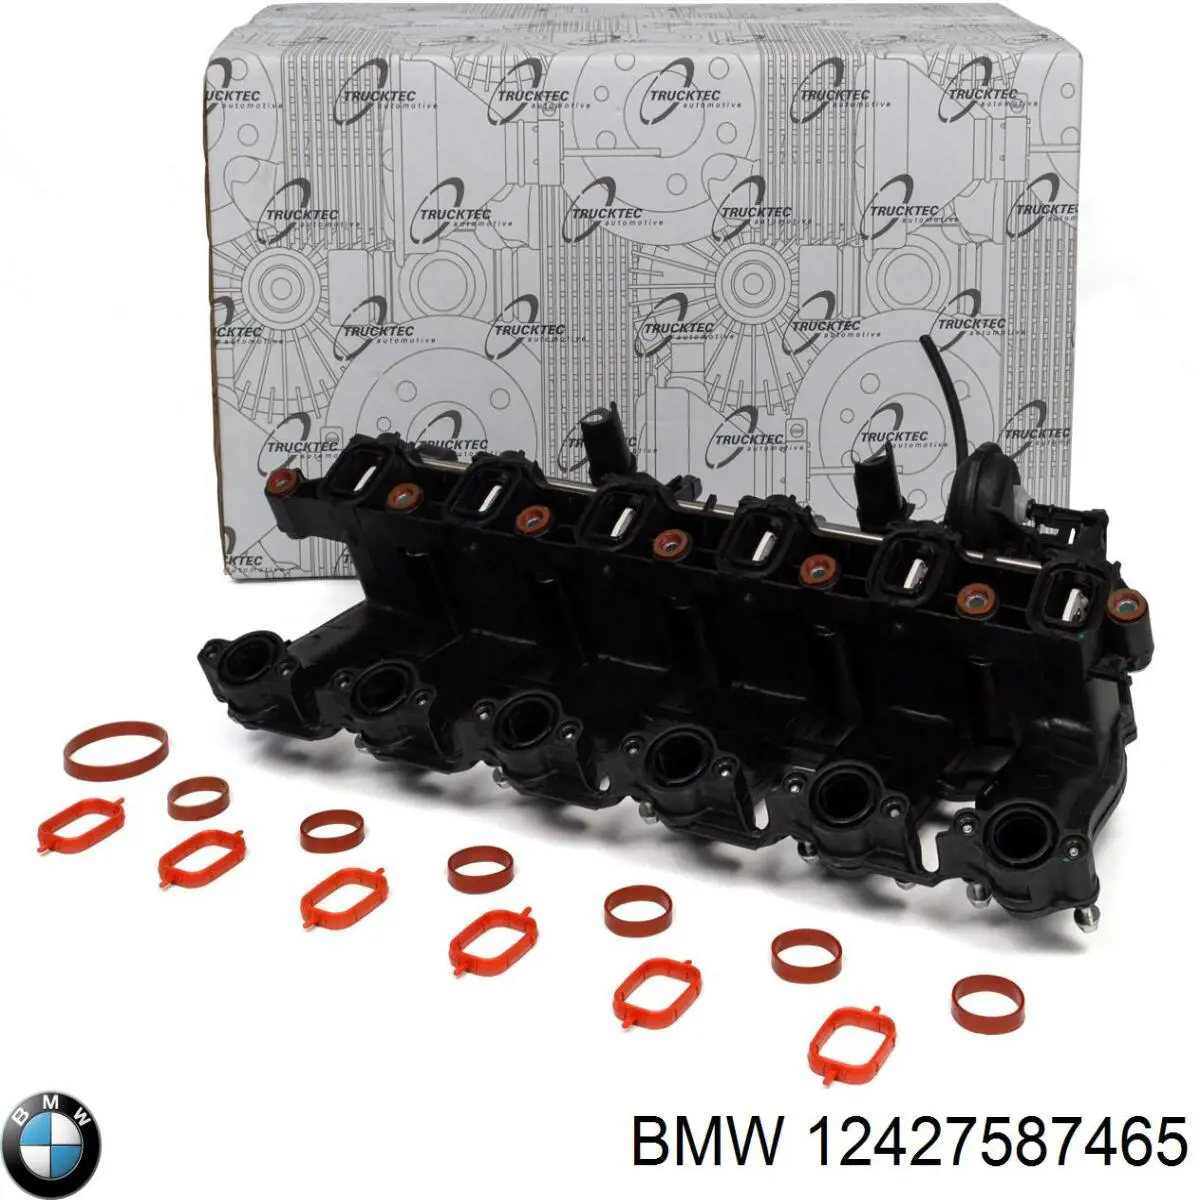 Cable de masa para batería BMW 12427587465